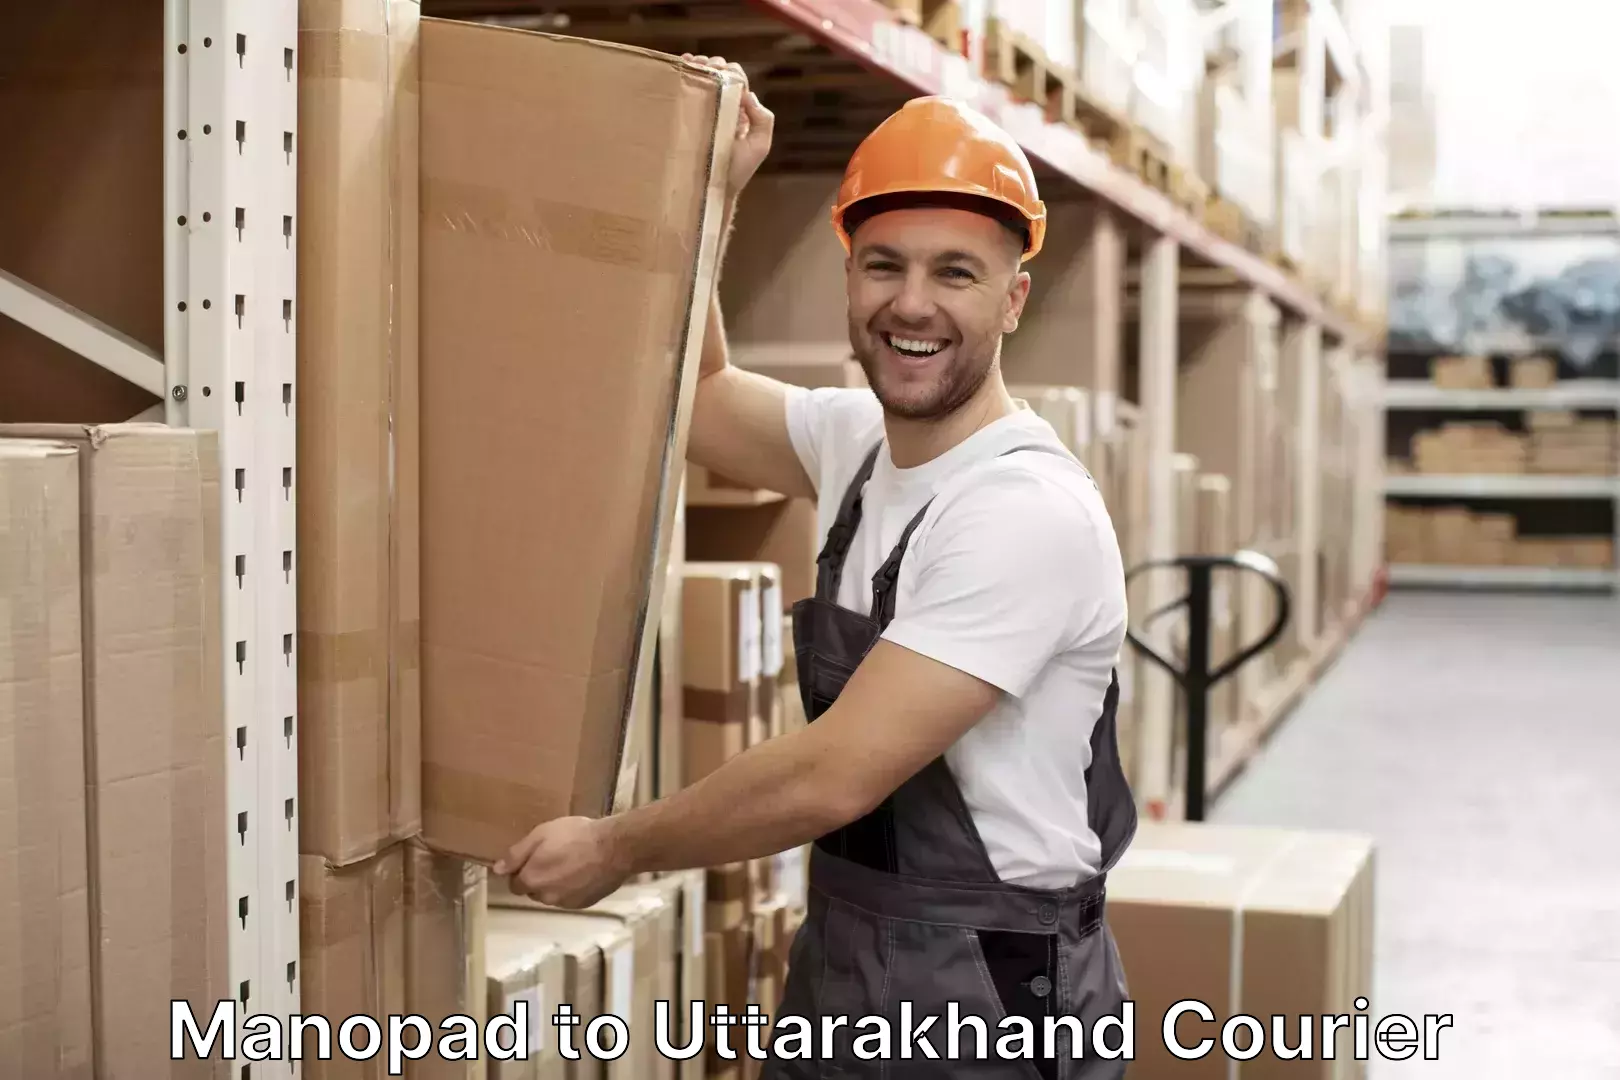 Luggage transport consulting Manopad to Uttarakhand